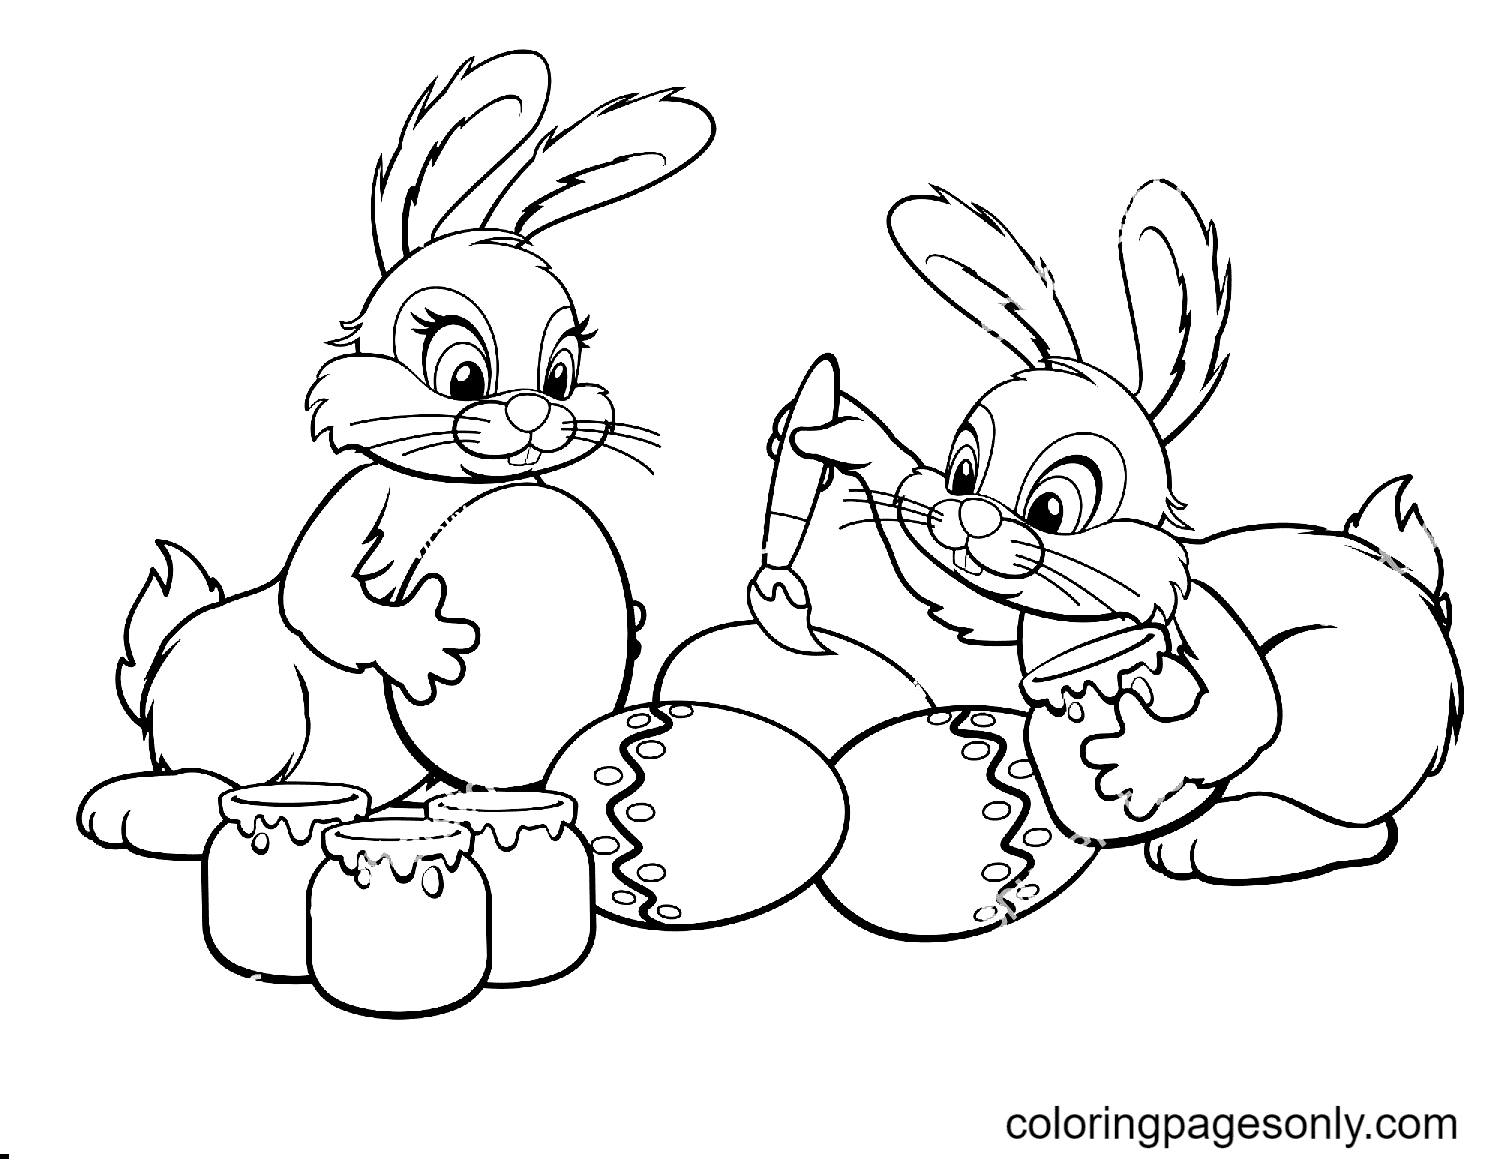 اثنان من أرنب عيد الفصح يرسمان بيضًا من أرنب عيد الفصح